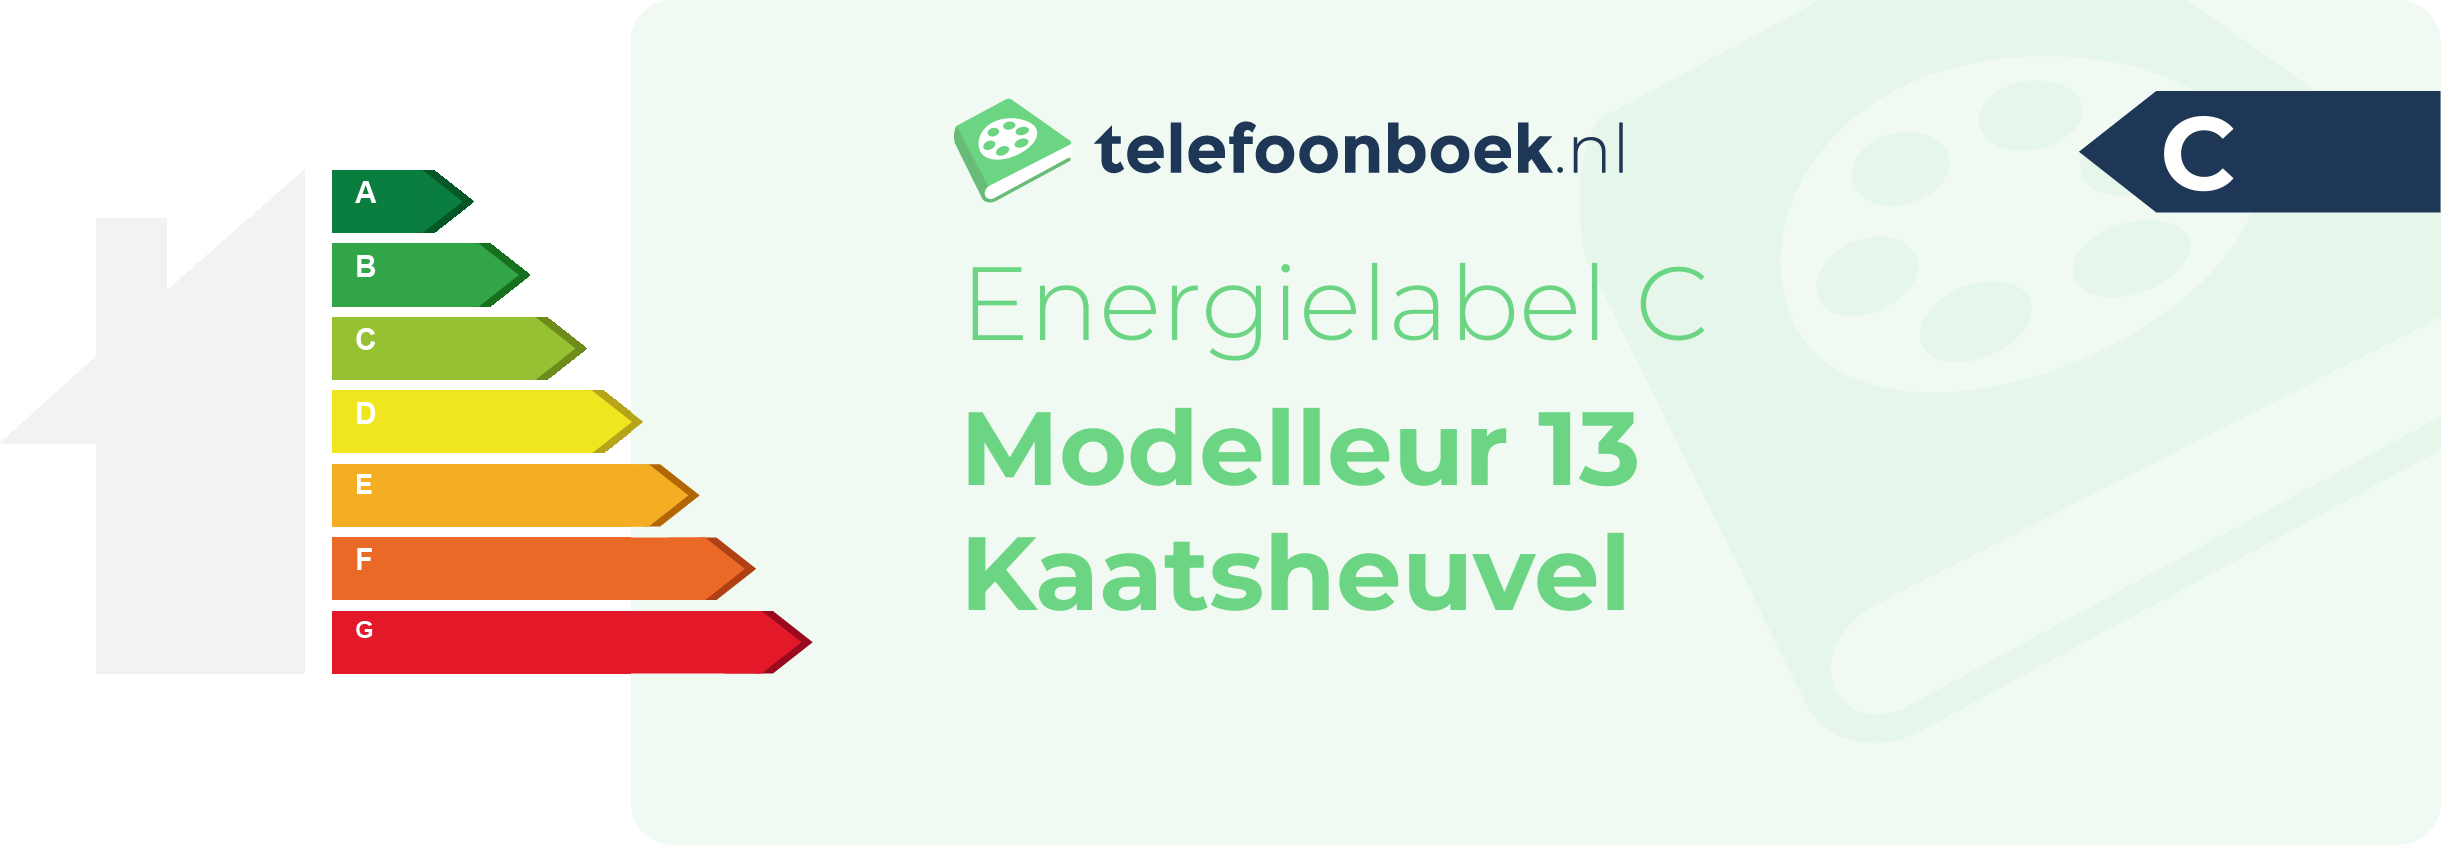 Energielabel Modelleur 13 Kaatsheuvel